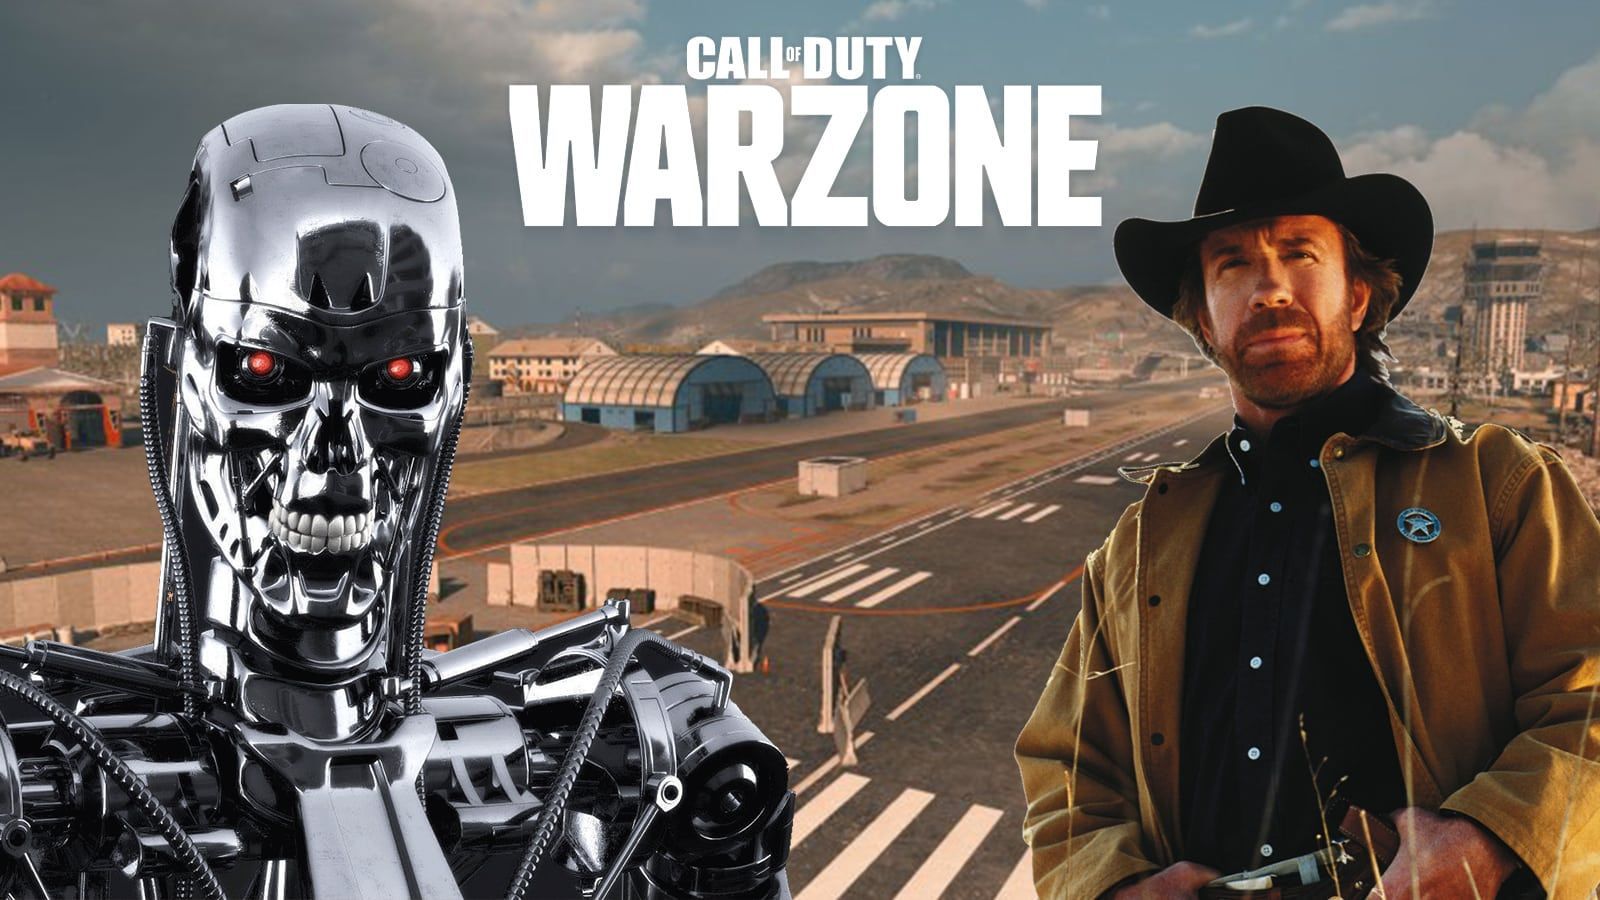 Terminator et Chuck Norris pourraient bien arriver sur Warzone - Dexerto.fr